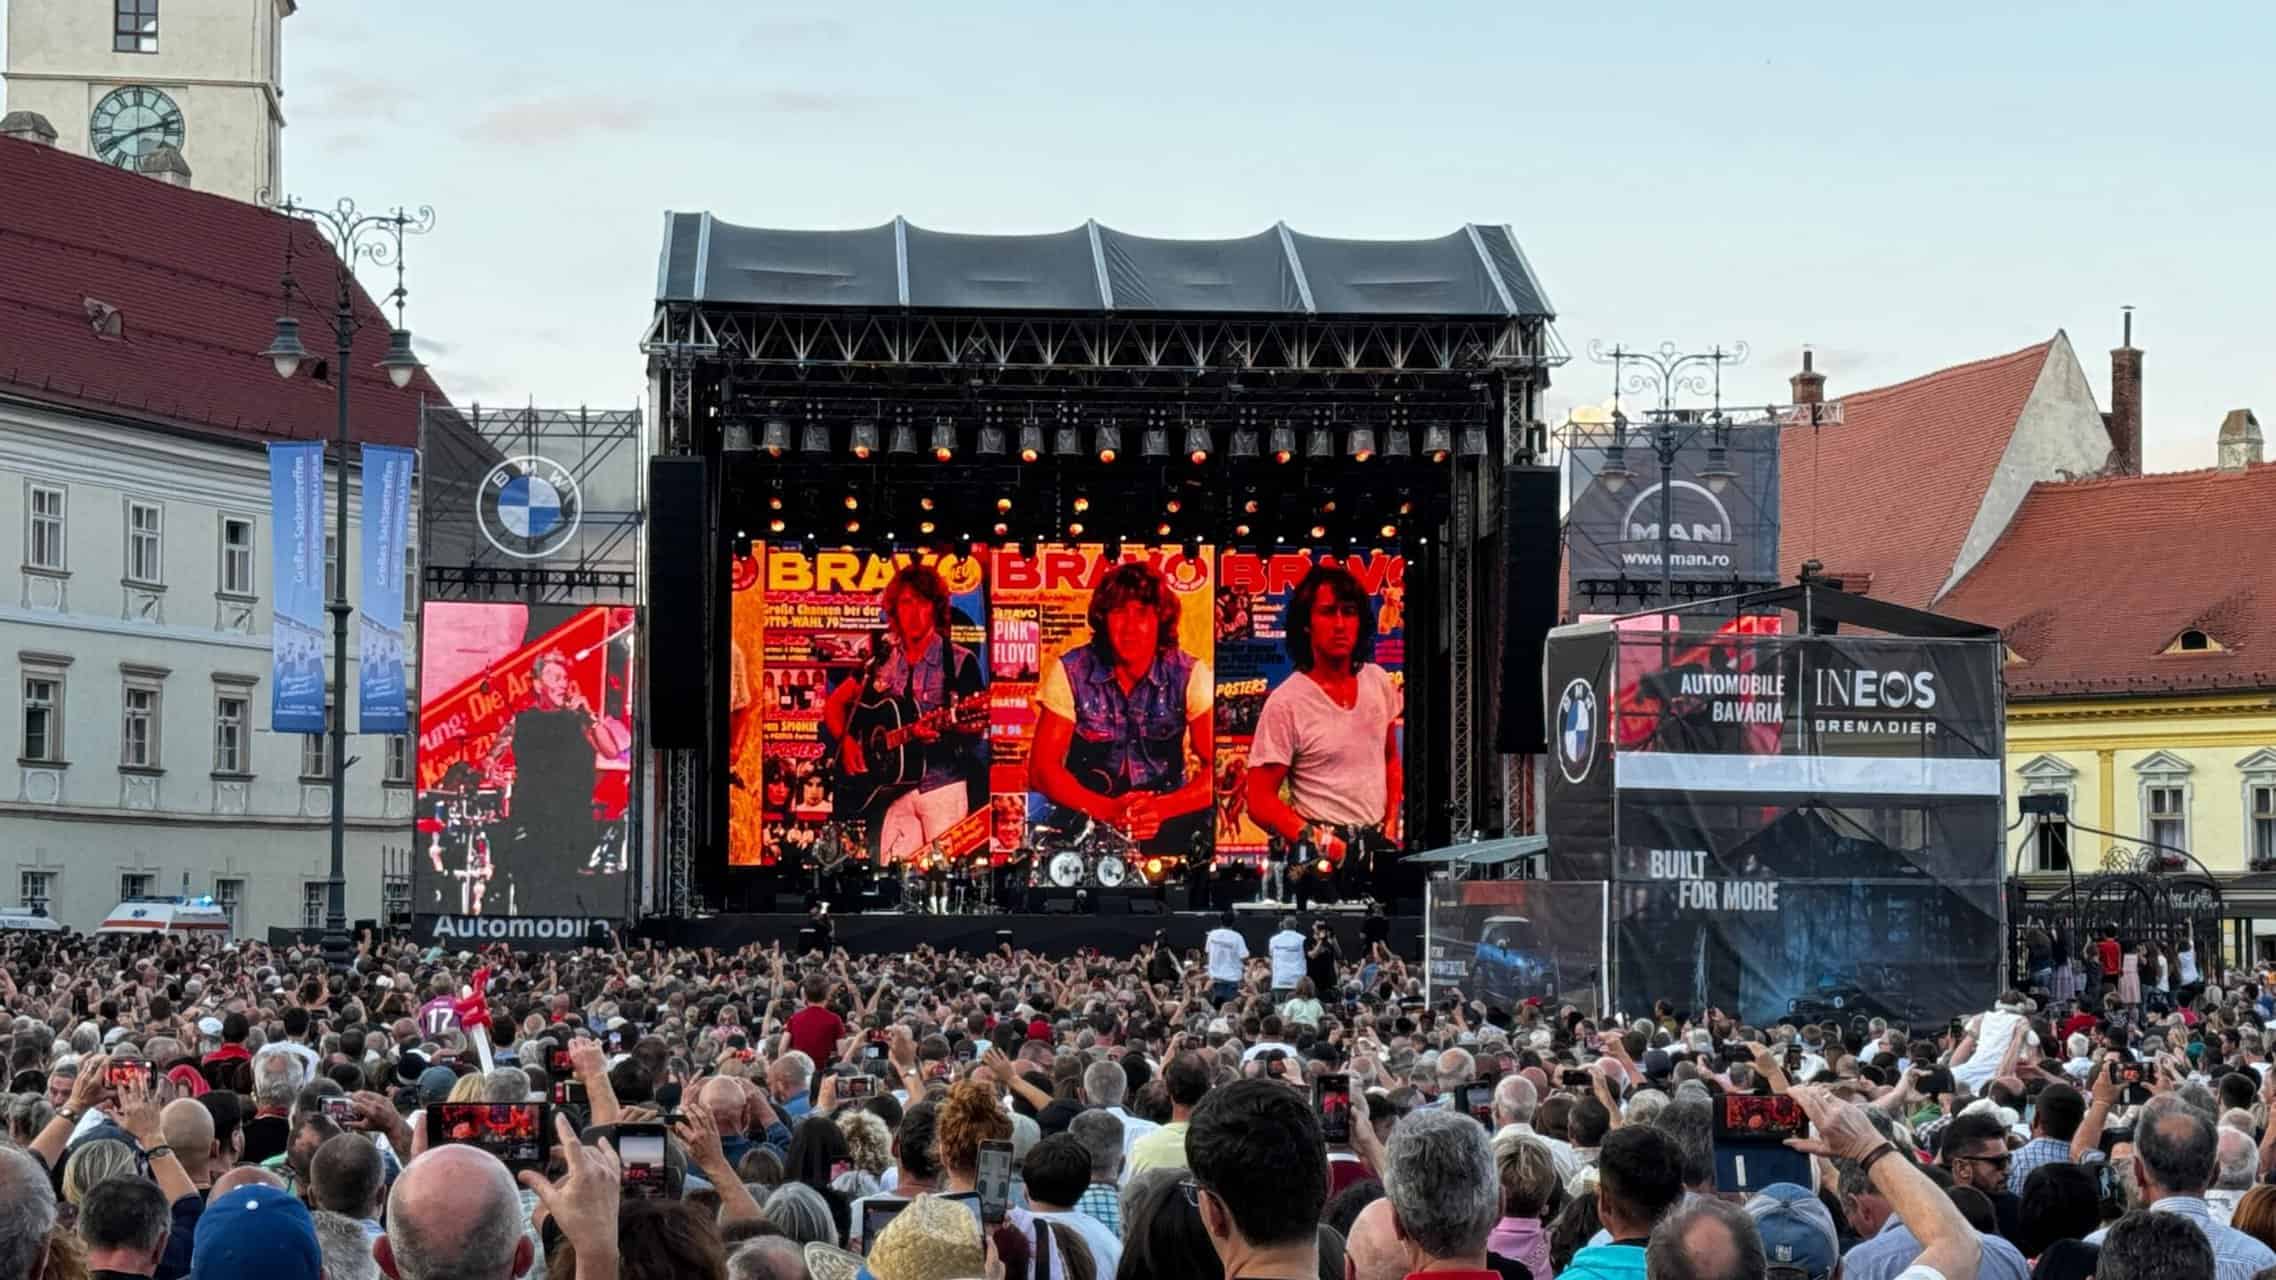 atmosferă electrizantă la concertul lui peter maffay de la sibiu. peste 20.000 de sași și iubitori de muzică rock au invadat piața mare (foto video)